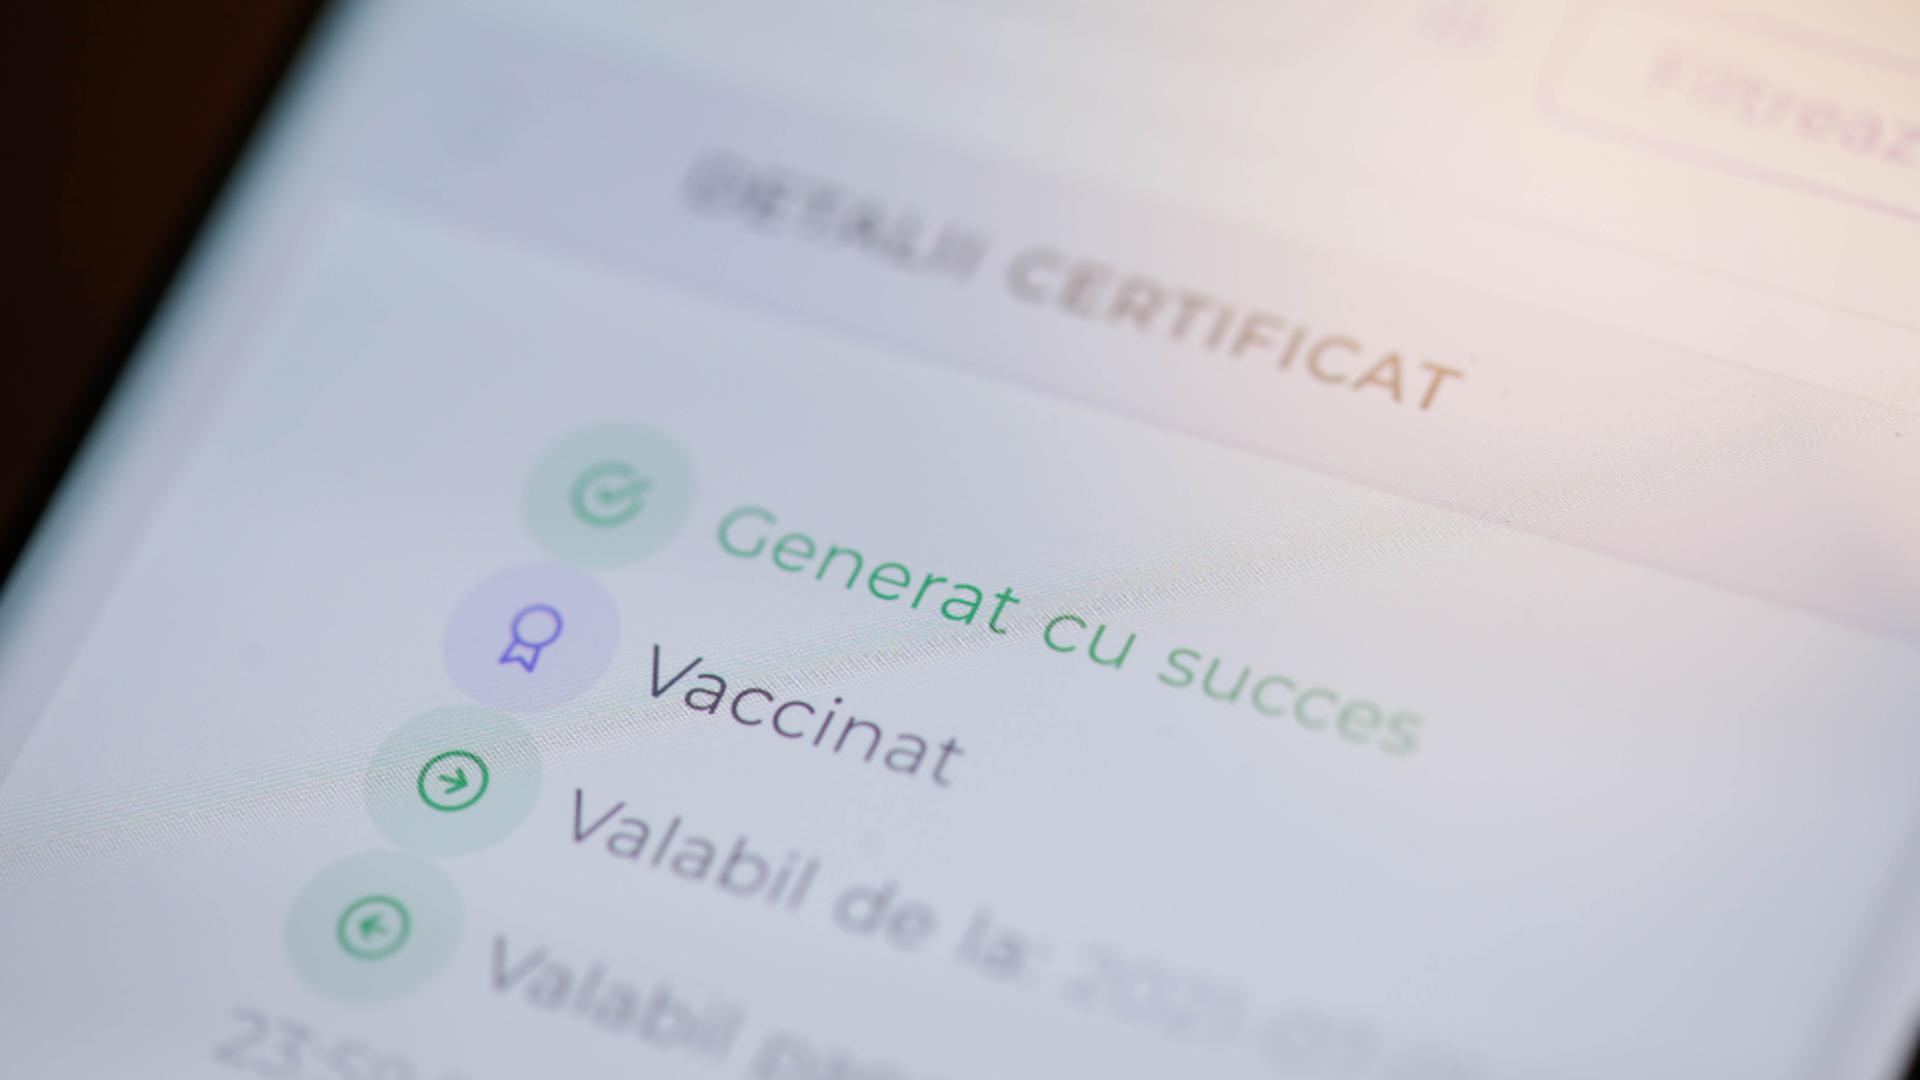 Certificat vaccinare antiCovid / Inquam Photos / Octav Ganea